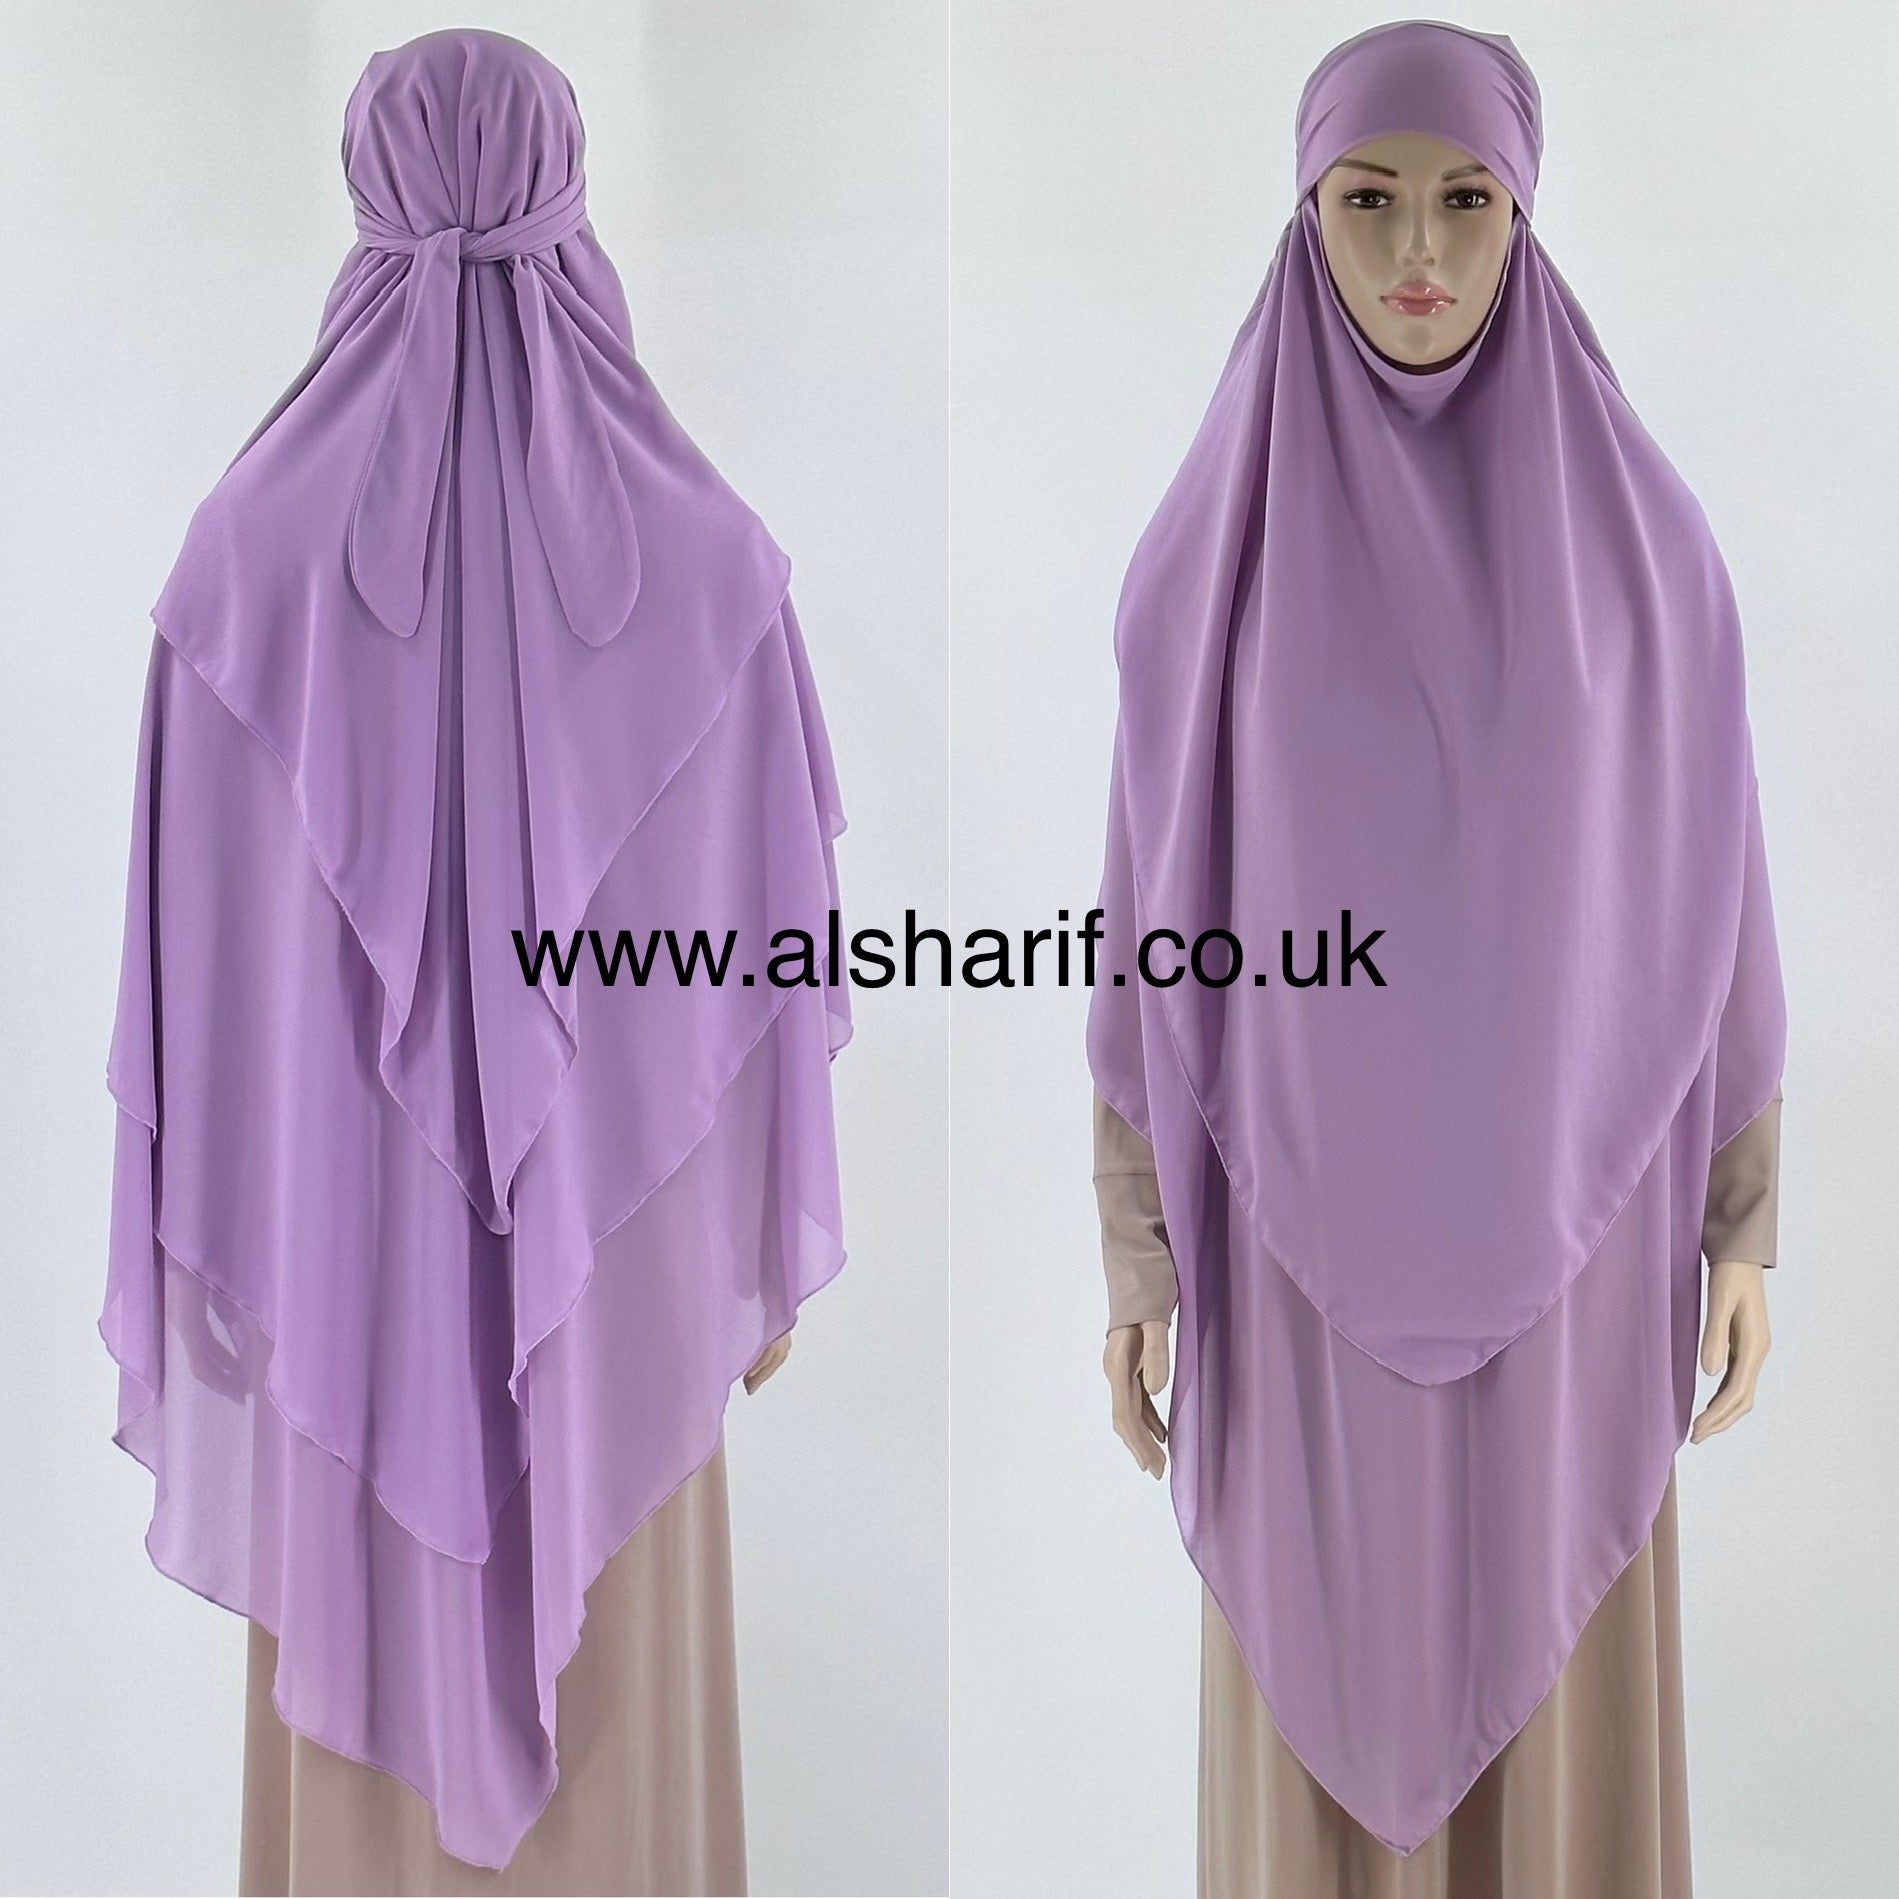 3 Layer Triangular Chiffon Khimar Hijab - KC7